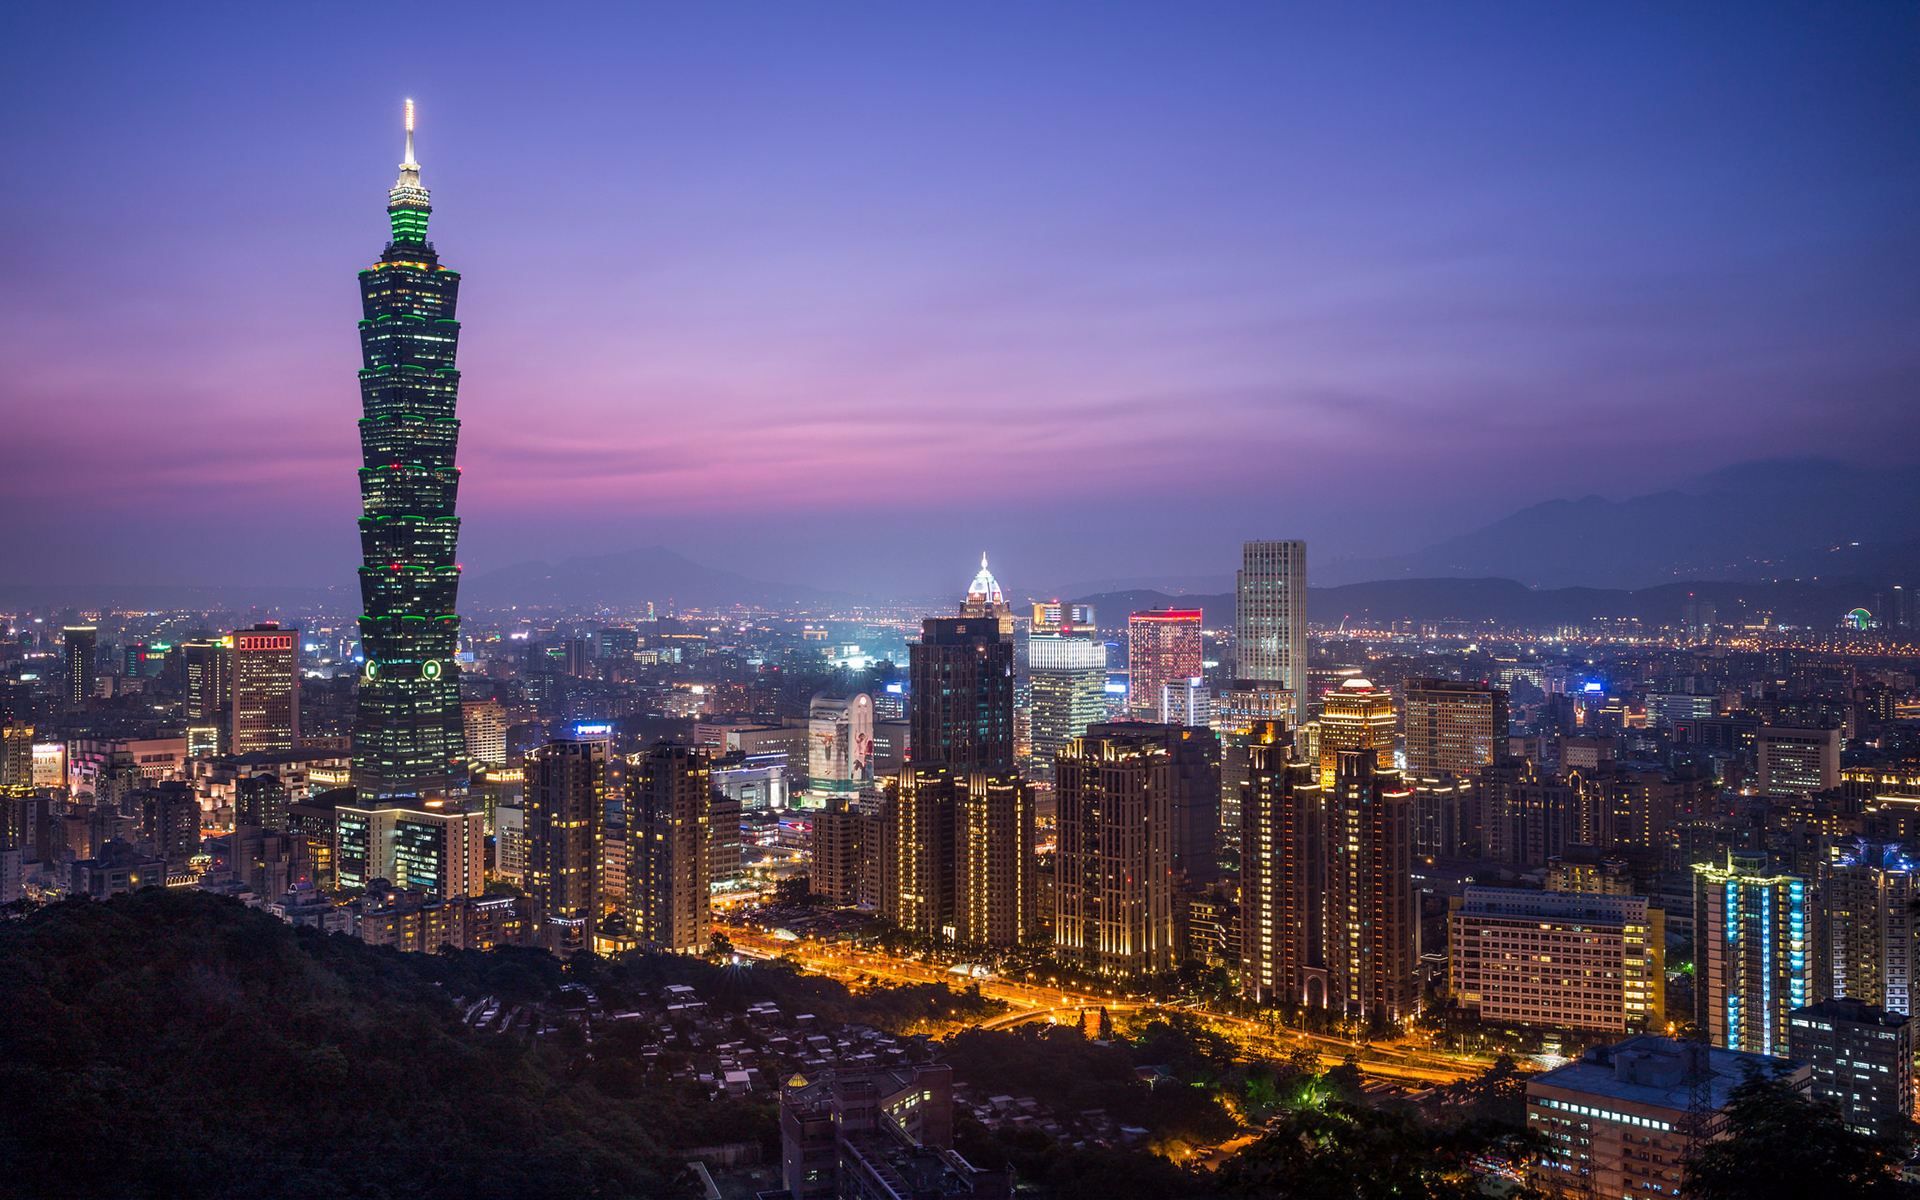 台北这座大厦曾是世界第一高楼,支撑起一代台湾人的自信!